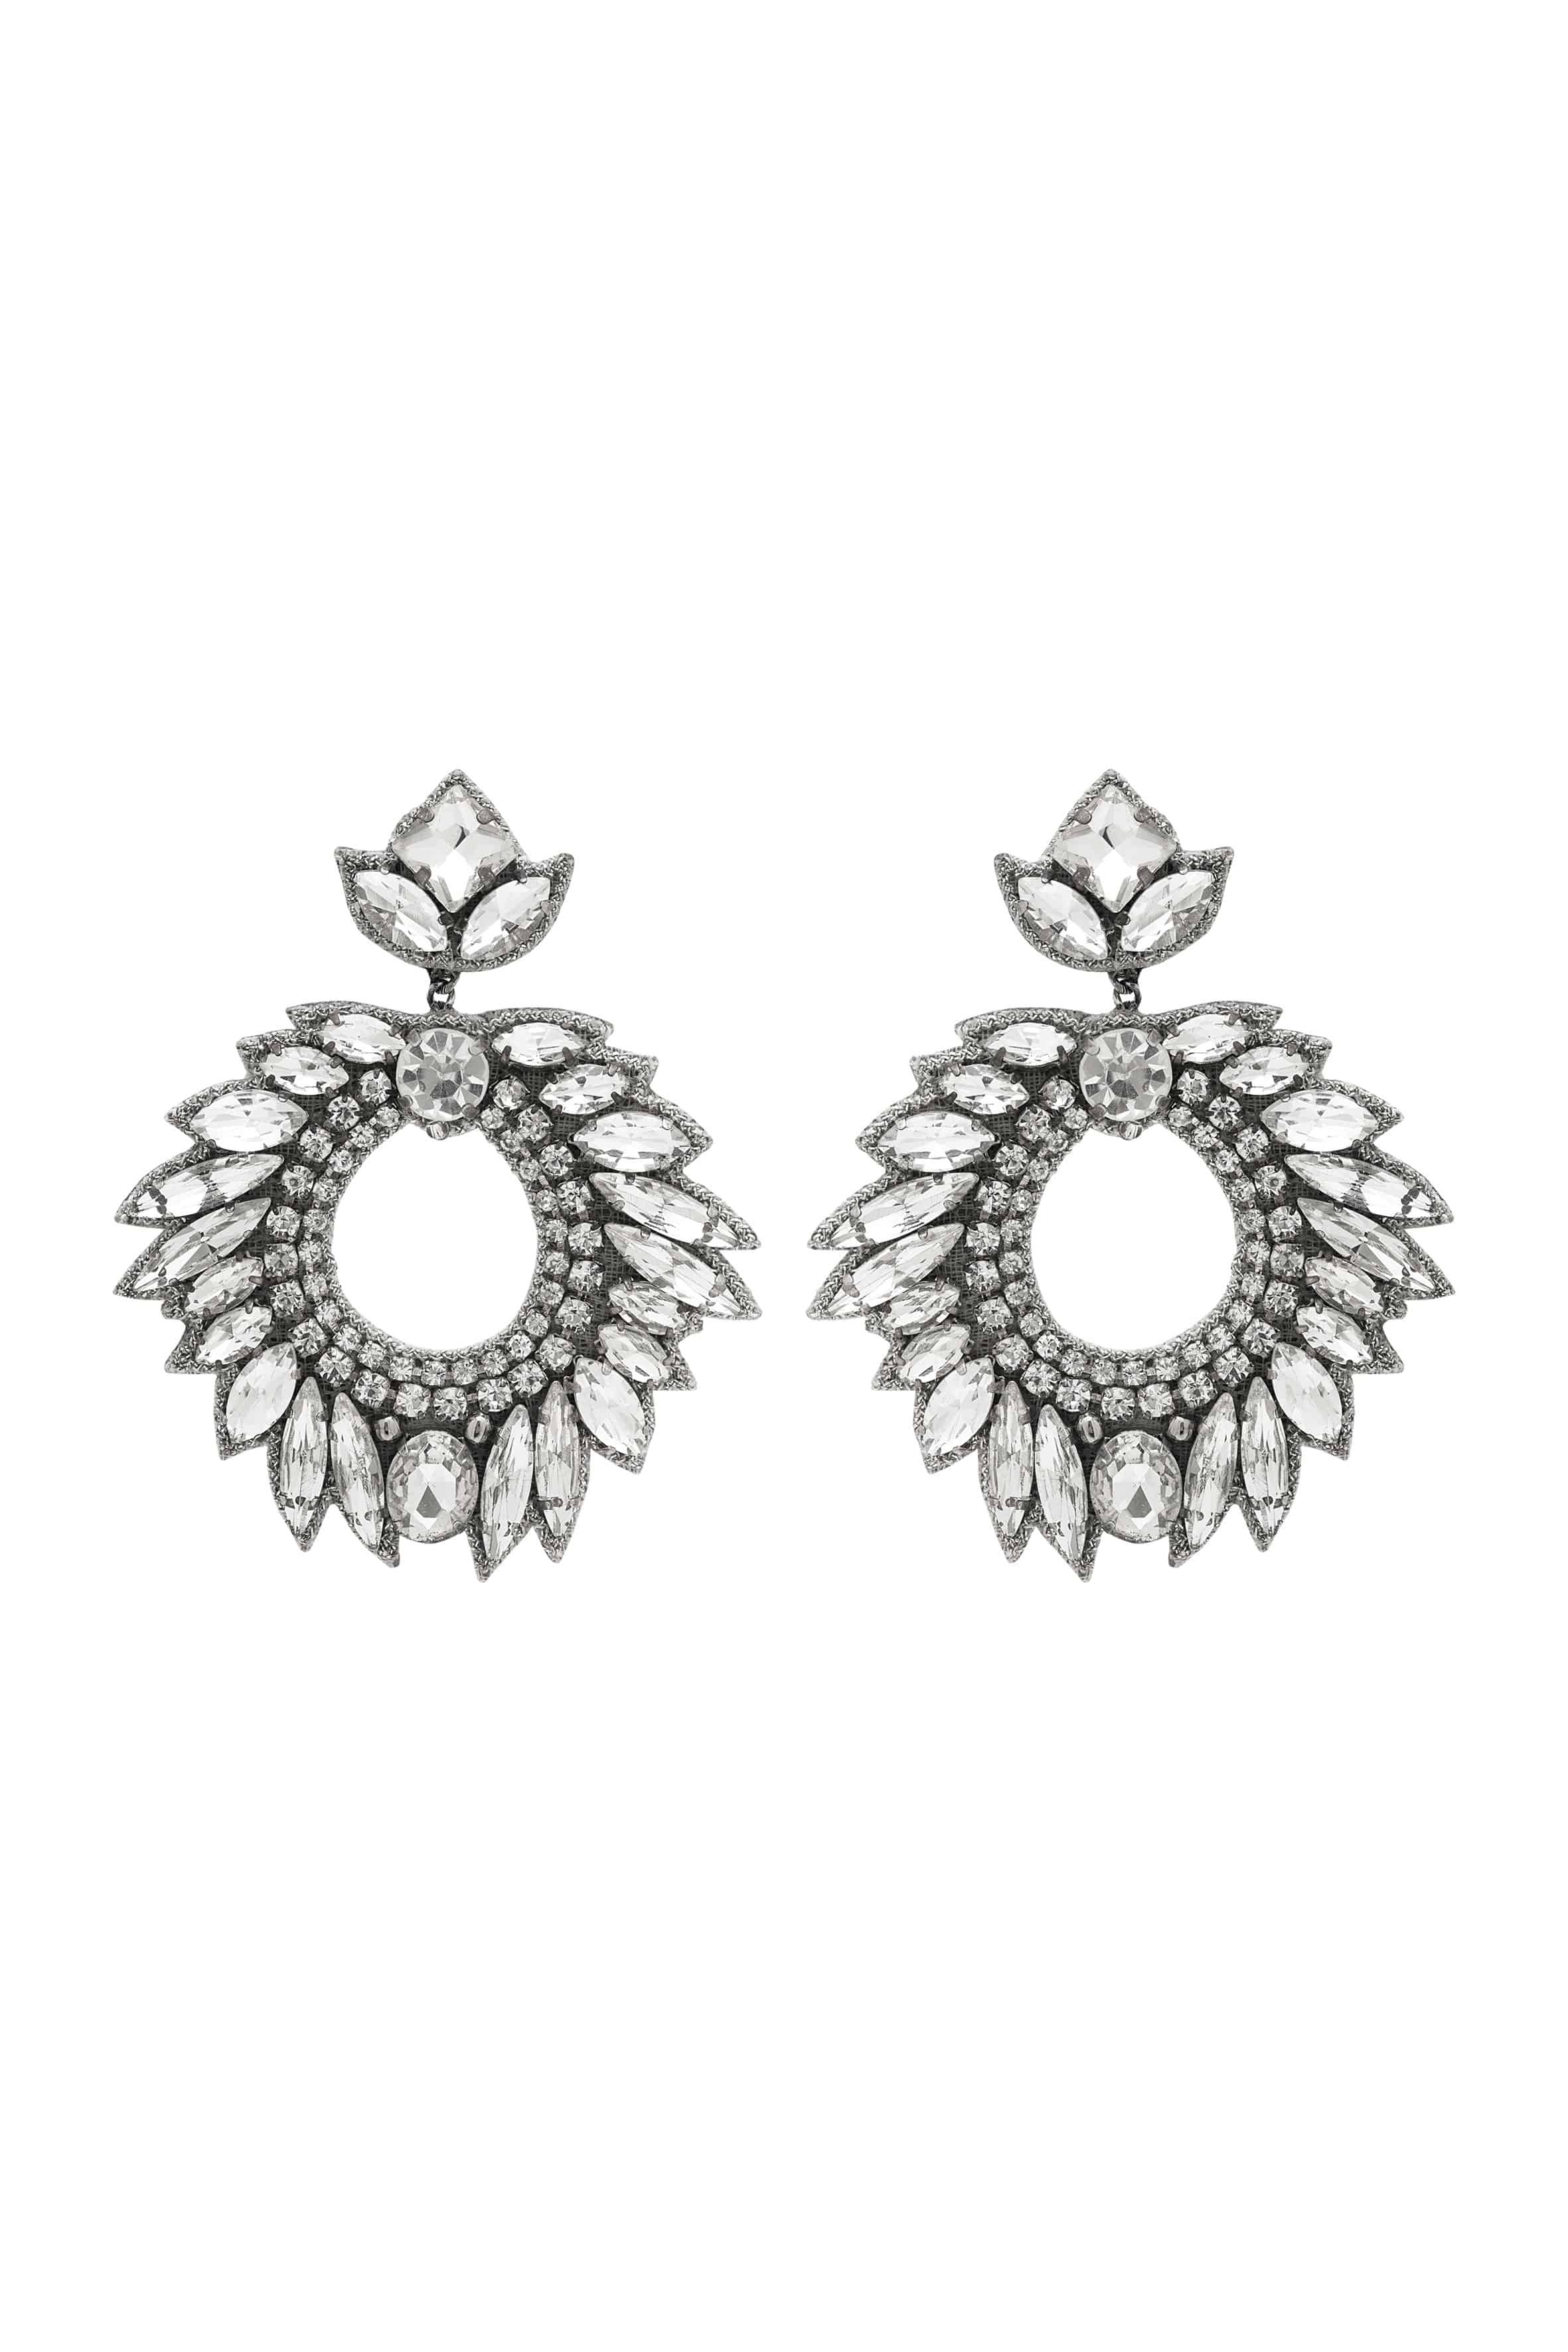 DEEPA GURNANI Chantel Earrings - Silver - Magpie Style